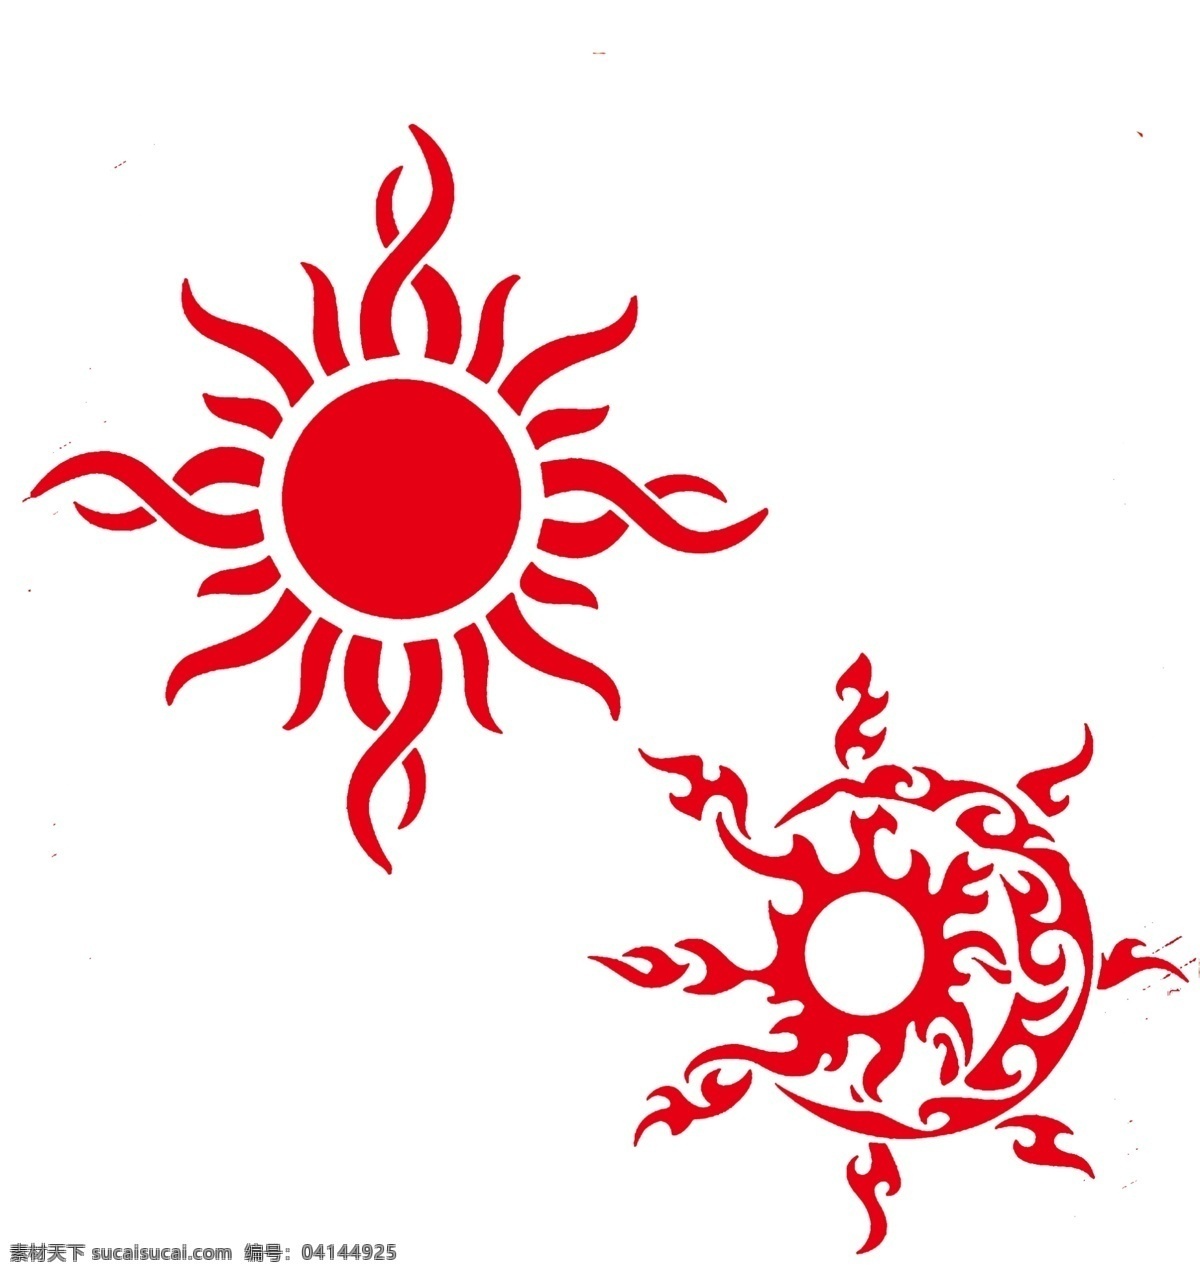 太阳 红色 矢量图 剪纸 艺术 雕刻 镂空 文化艺术 传统文化